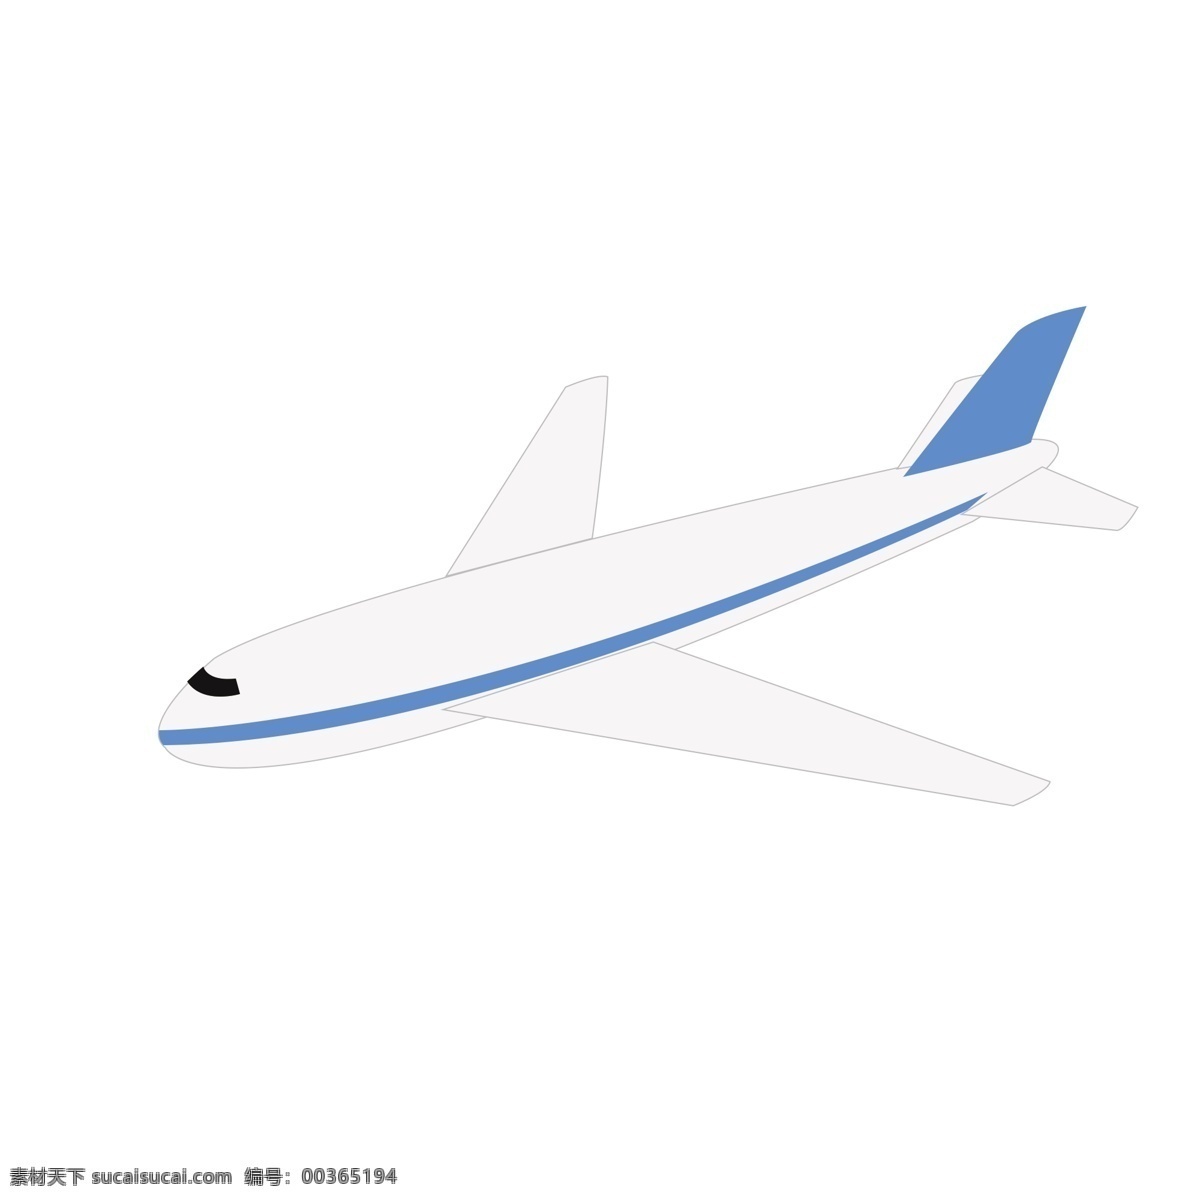 手绘 交通工具 飞机 手绘飞机 卡通飞机